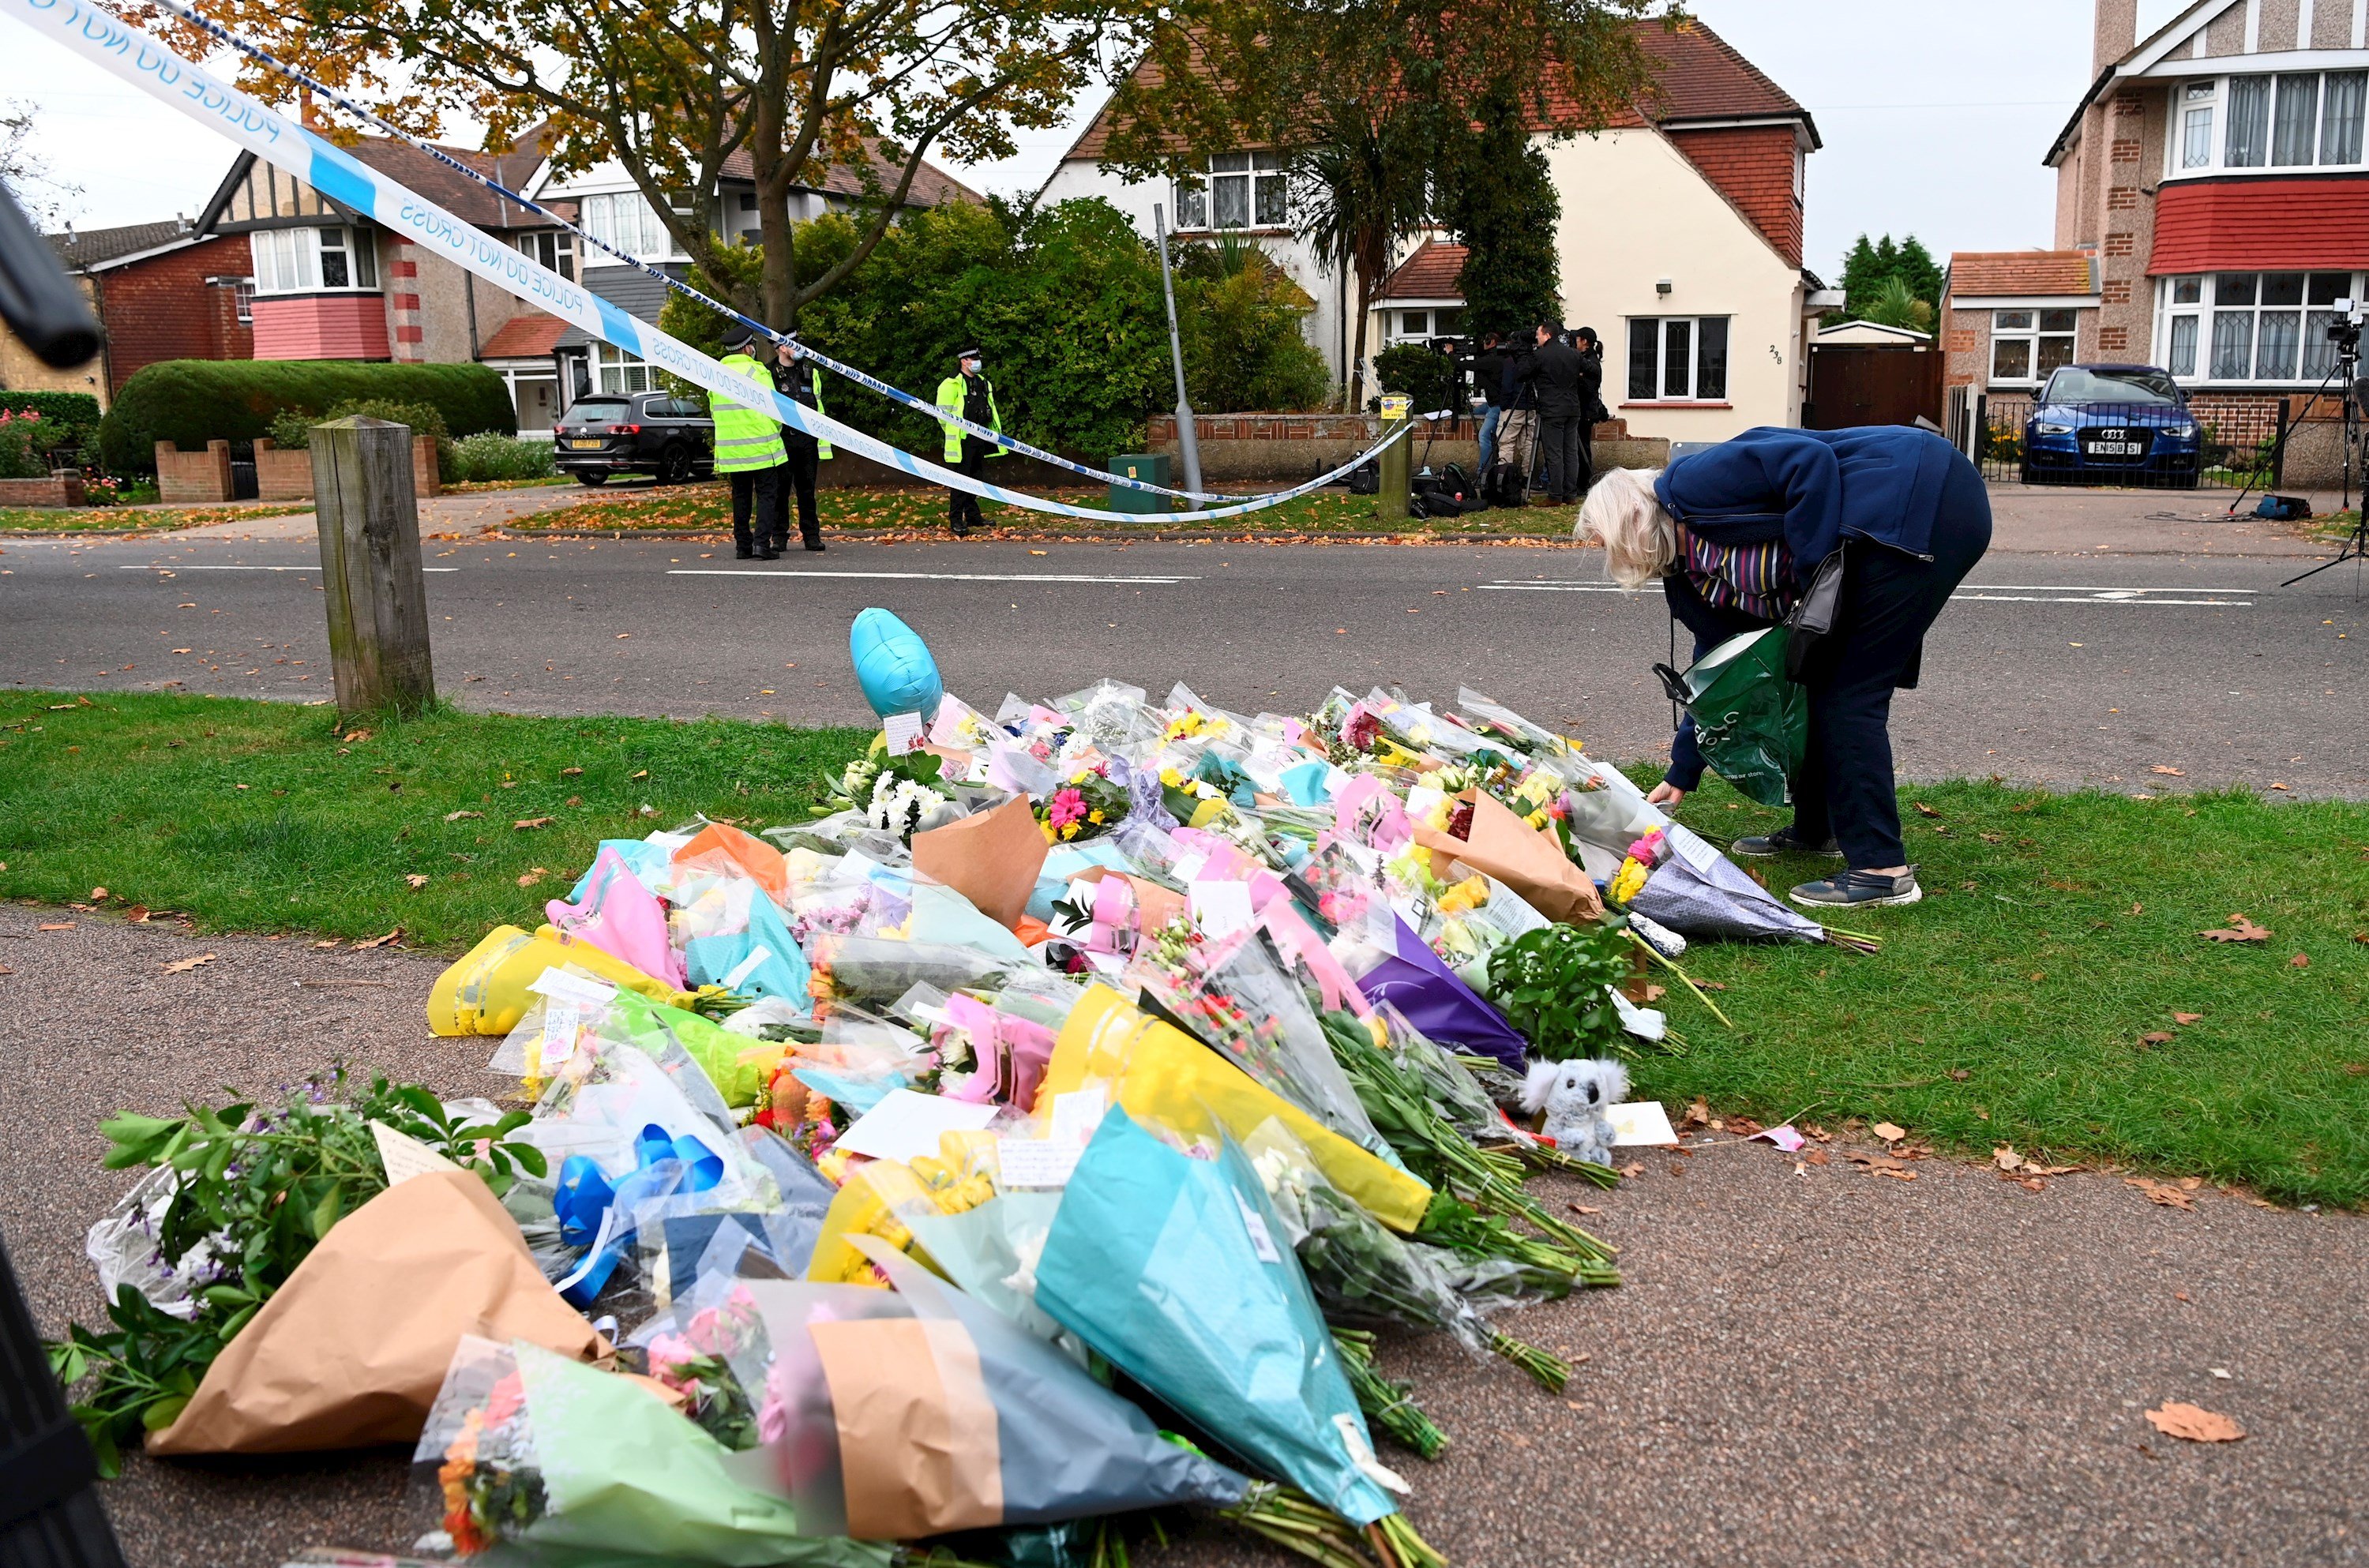 L'assassinat del diputat britànic procatalà va ser un atac terrorista